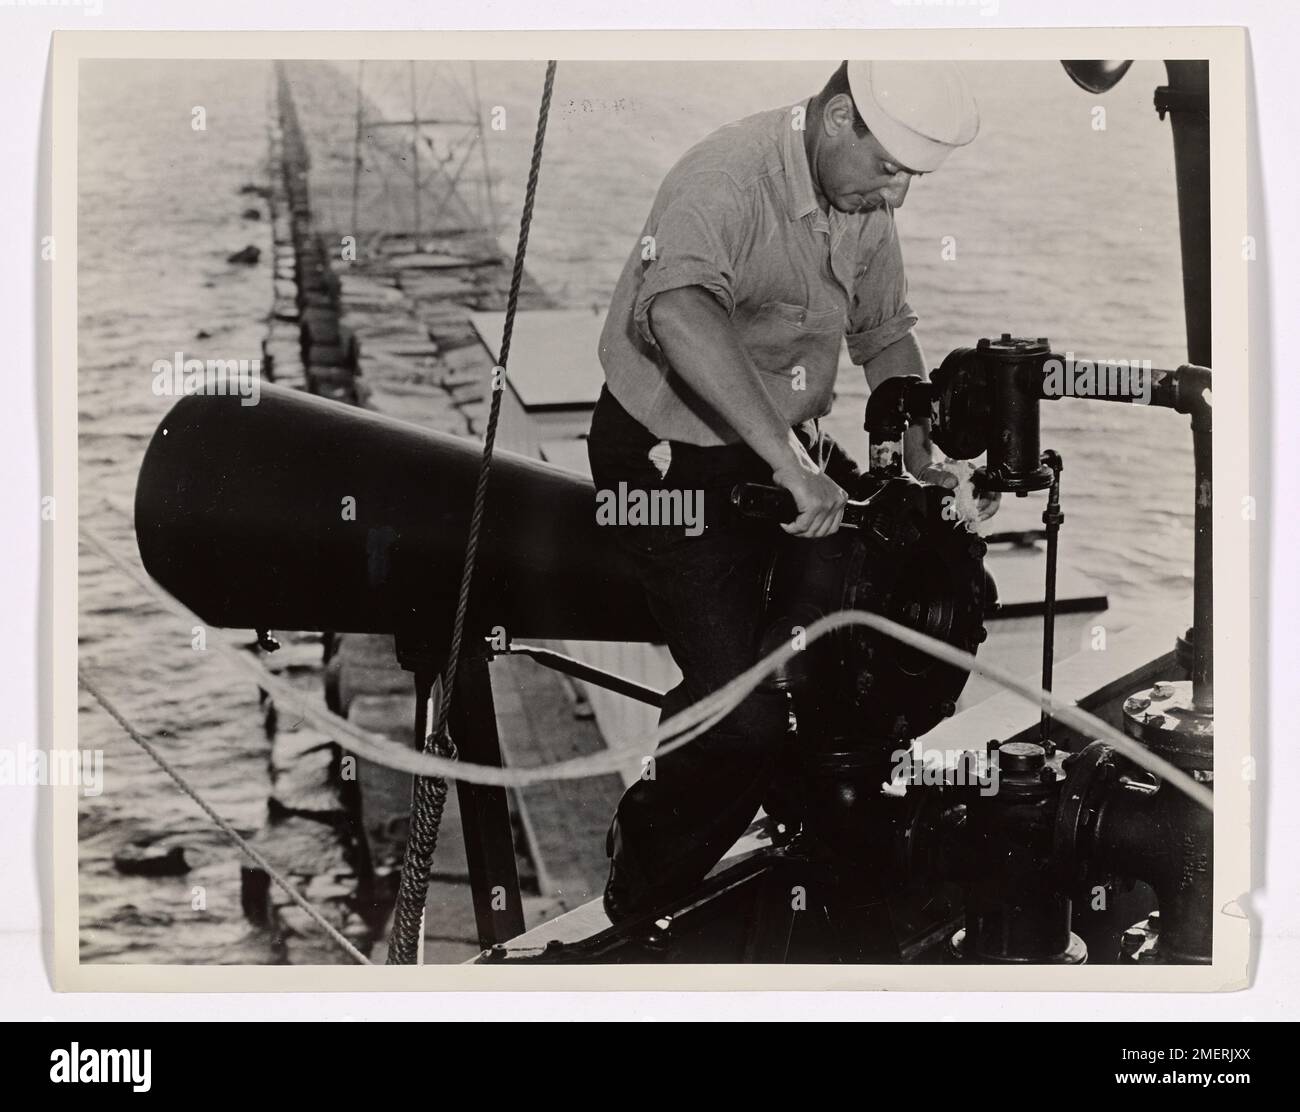 Segnale fendinebbia. Questo articolo consiste in una fotografia di un Coast Guardsmen degli Stati Uniti che lavora su un segnale di nebbia. Foto Stock